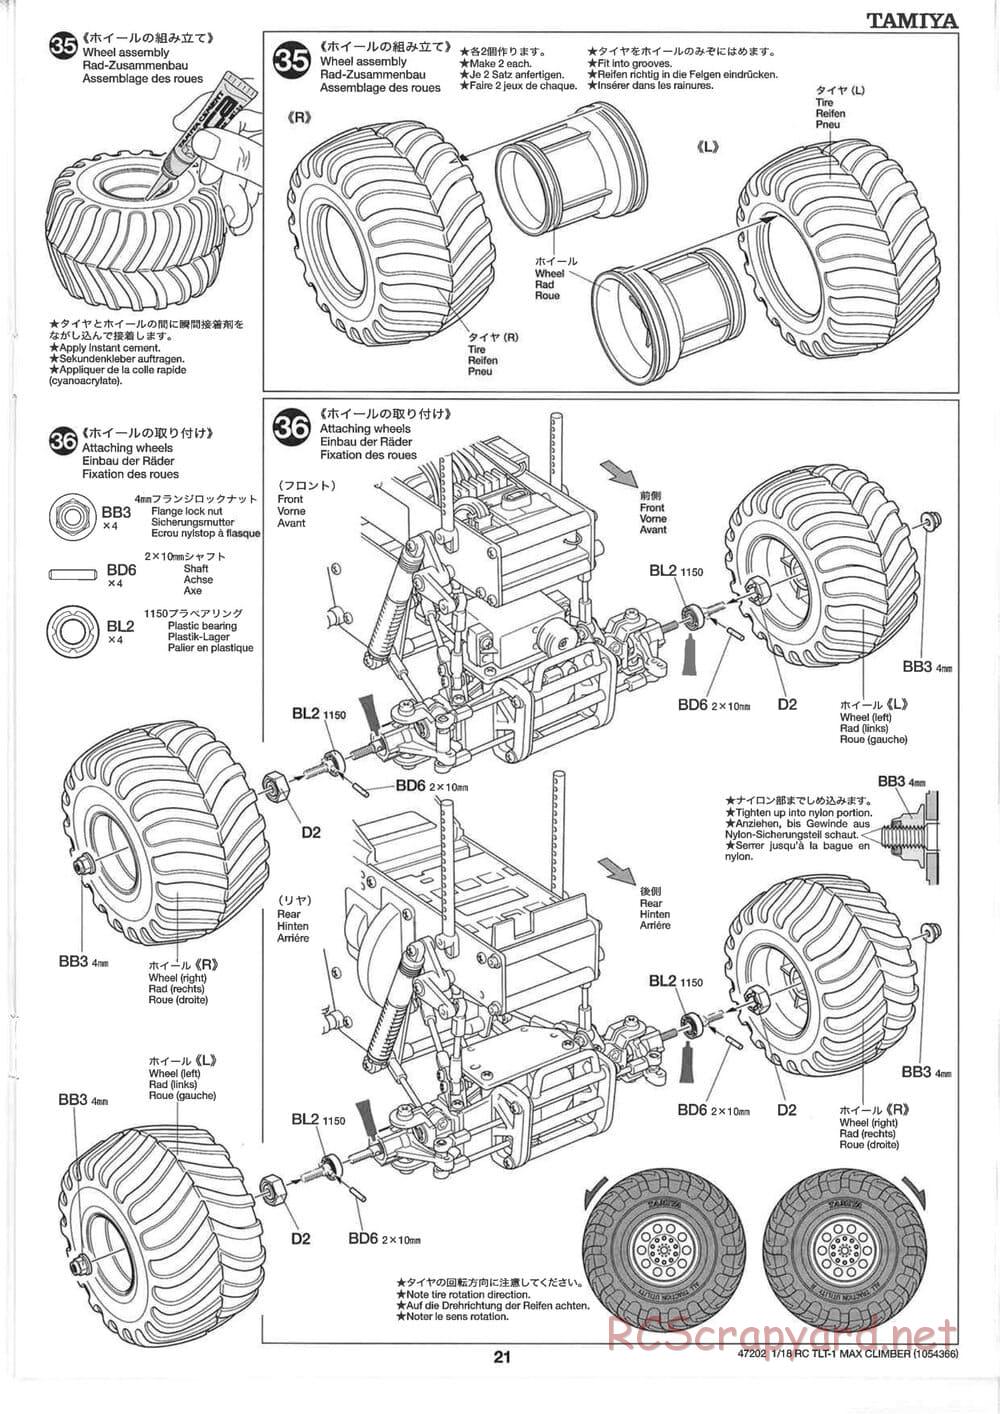 Tamiya - Max Climber - TLT-1 Chassis - Manual - Page 21